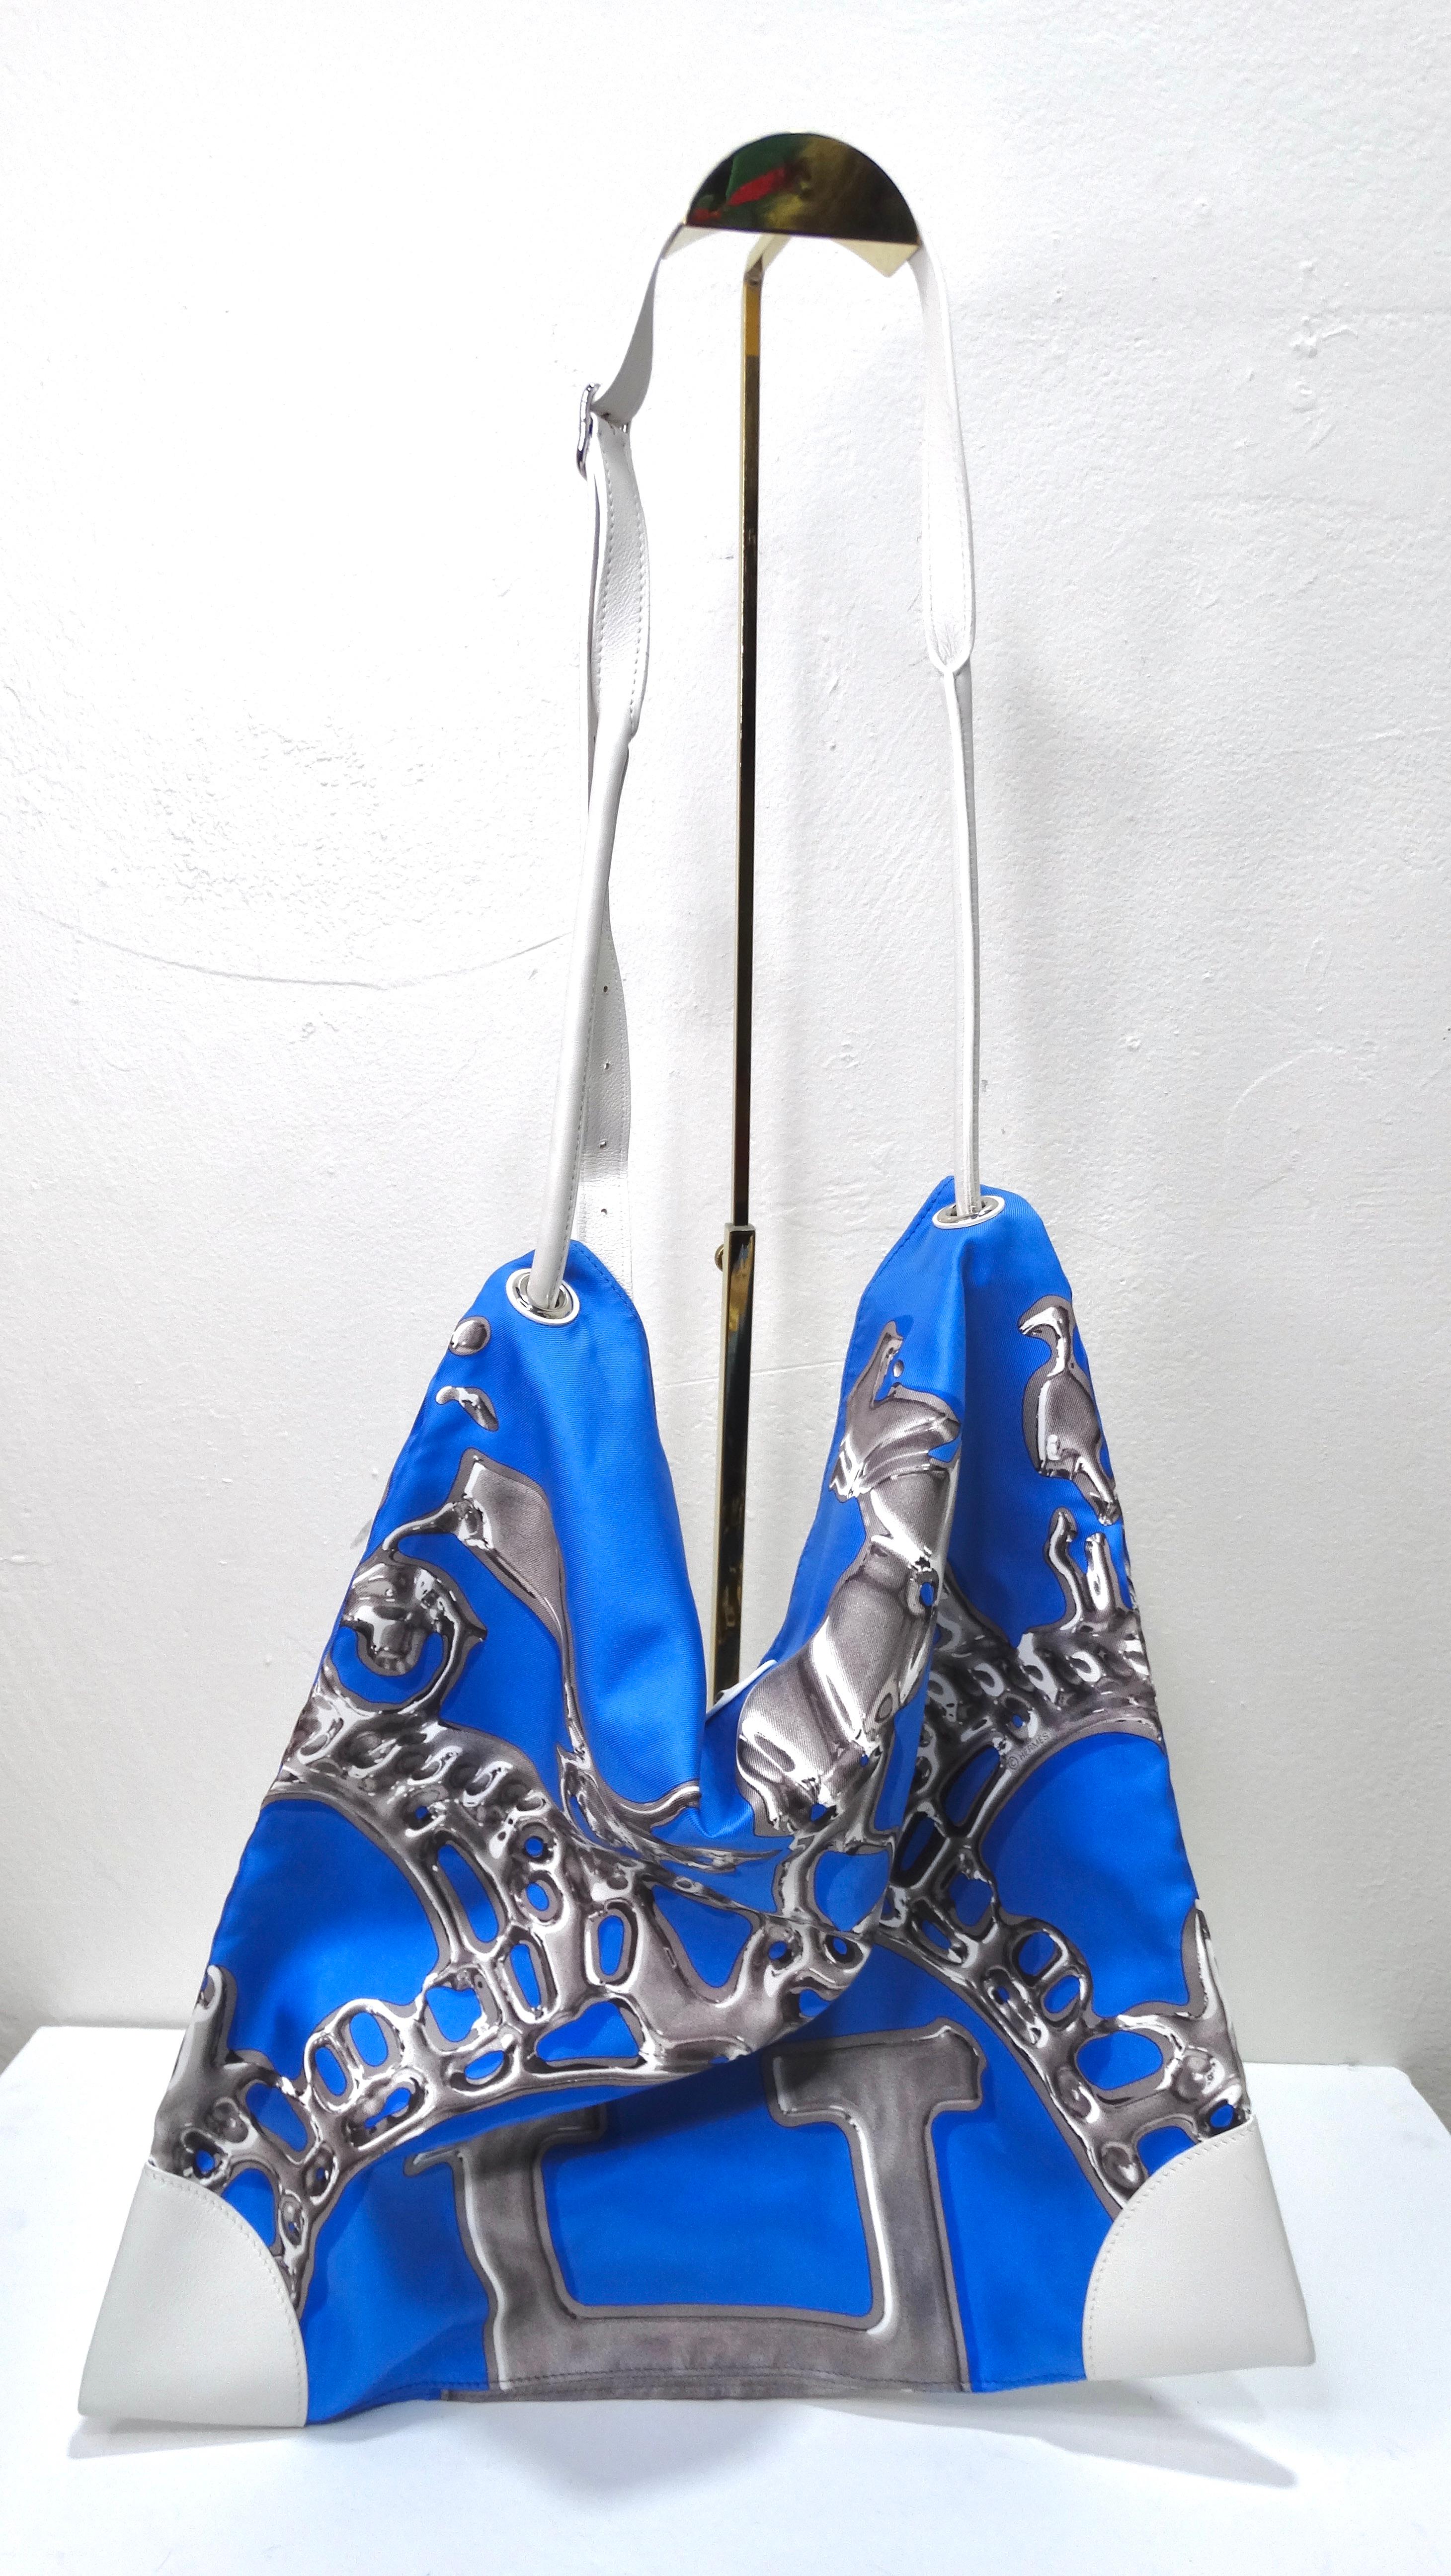 Il n'y a rien de tel que ce sac à main extraordinaire ! Ce sac à main a une teinte bleu électrique qui apportera une touche inattendue à n'importe quel ensemble. Ce sac est un authentique sac Hermès Silk City 33 de l'année 2011 ! Le corps du sac est